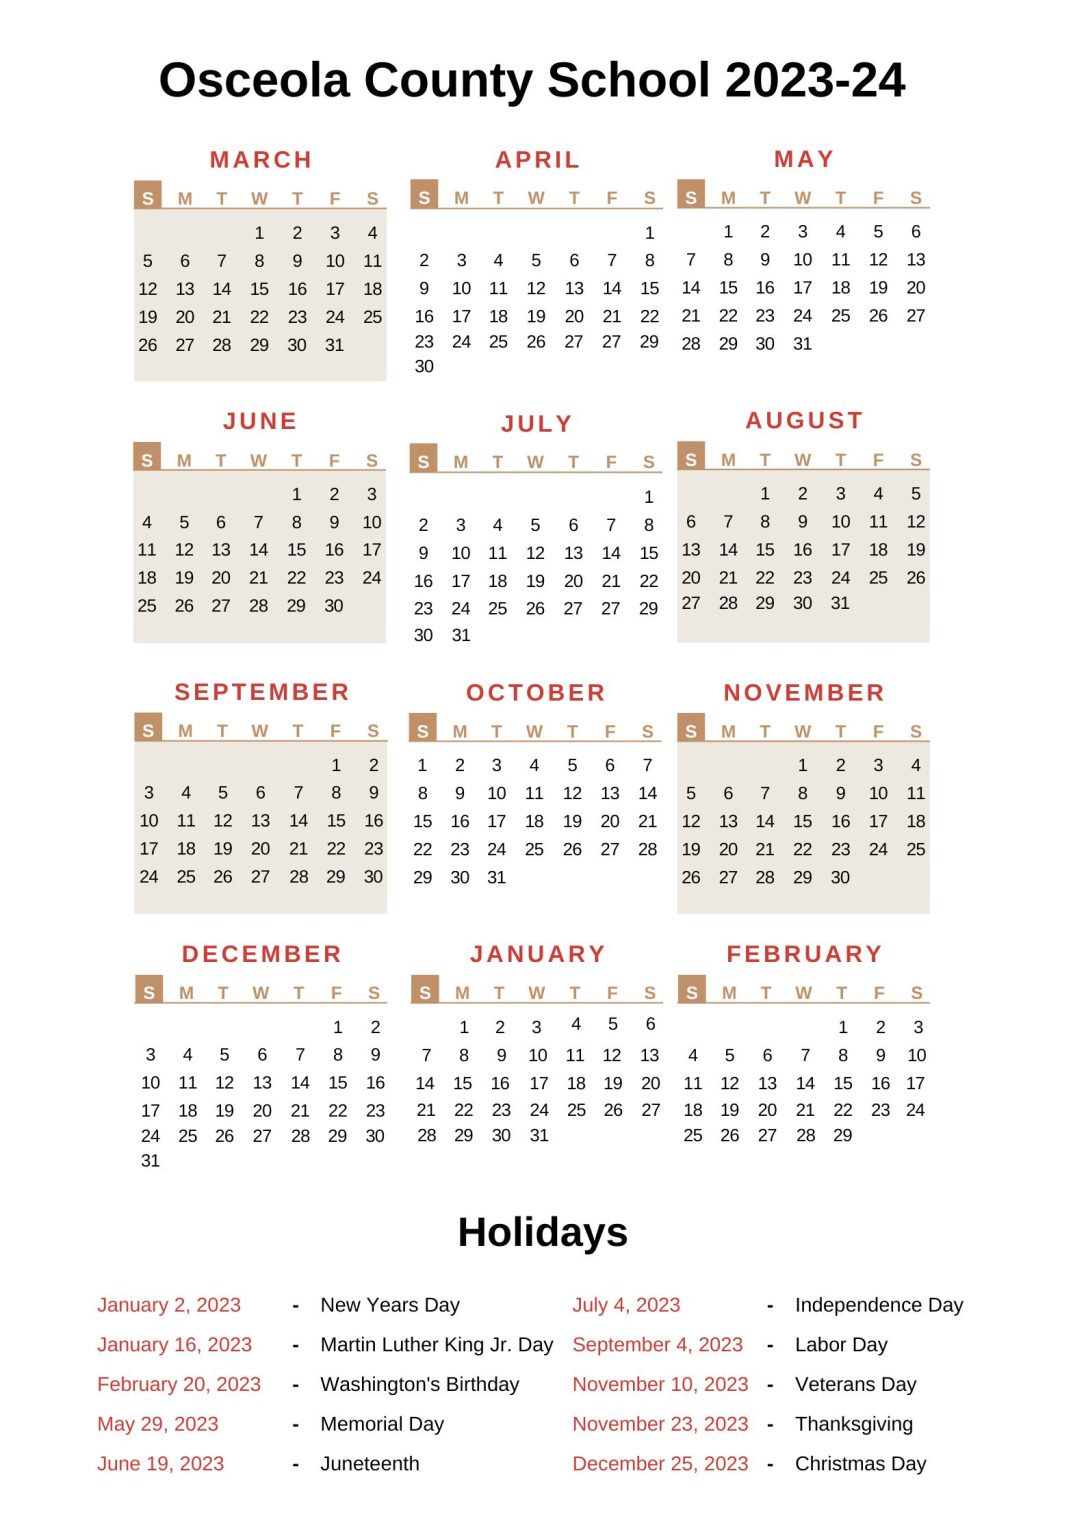 Osceola County School Calendar 202324 With Holidays